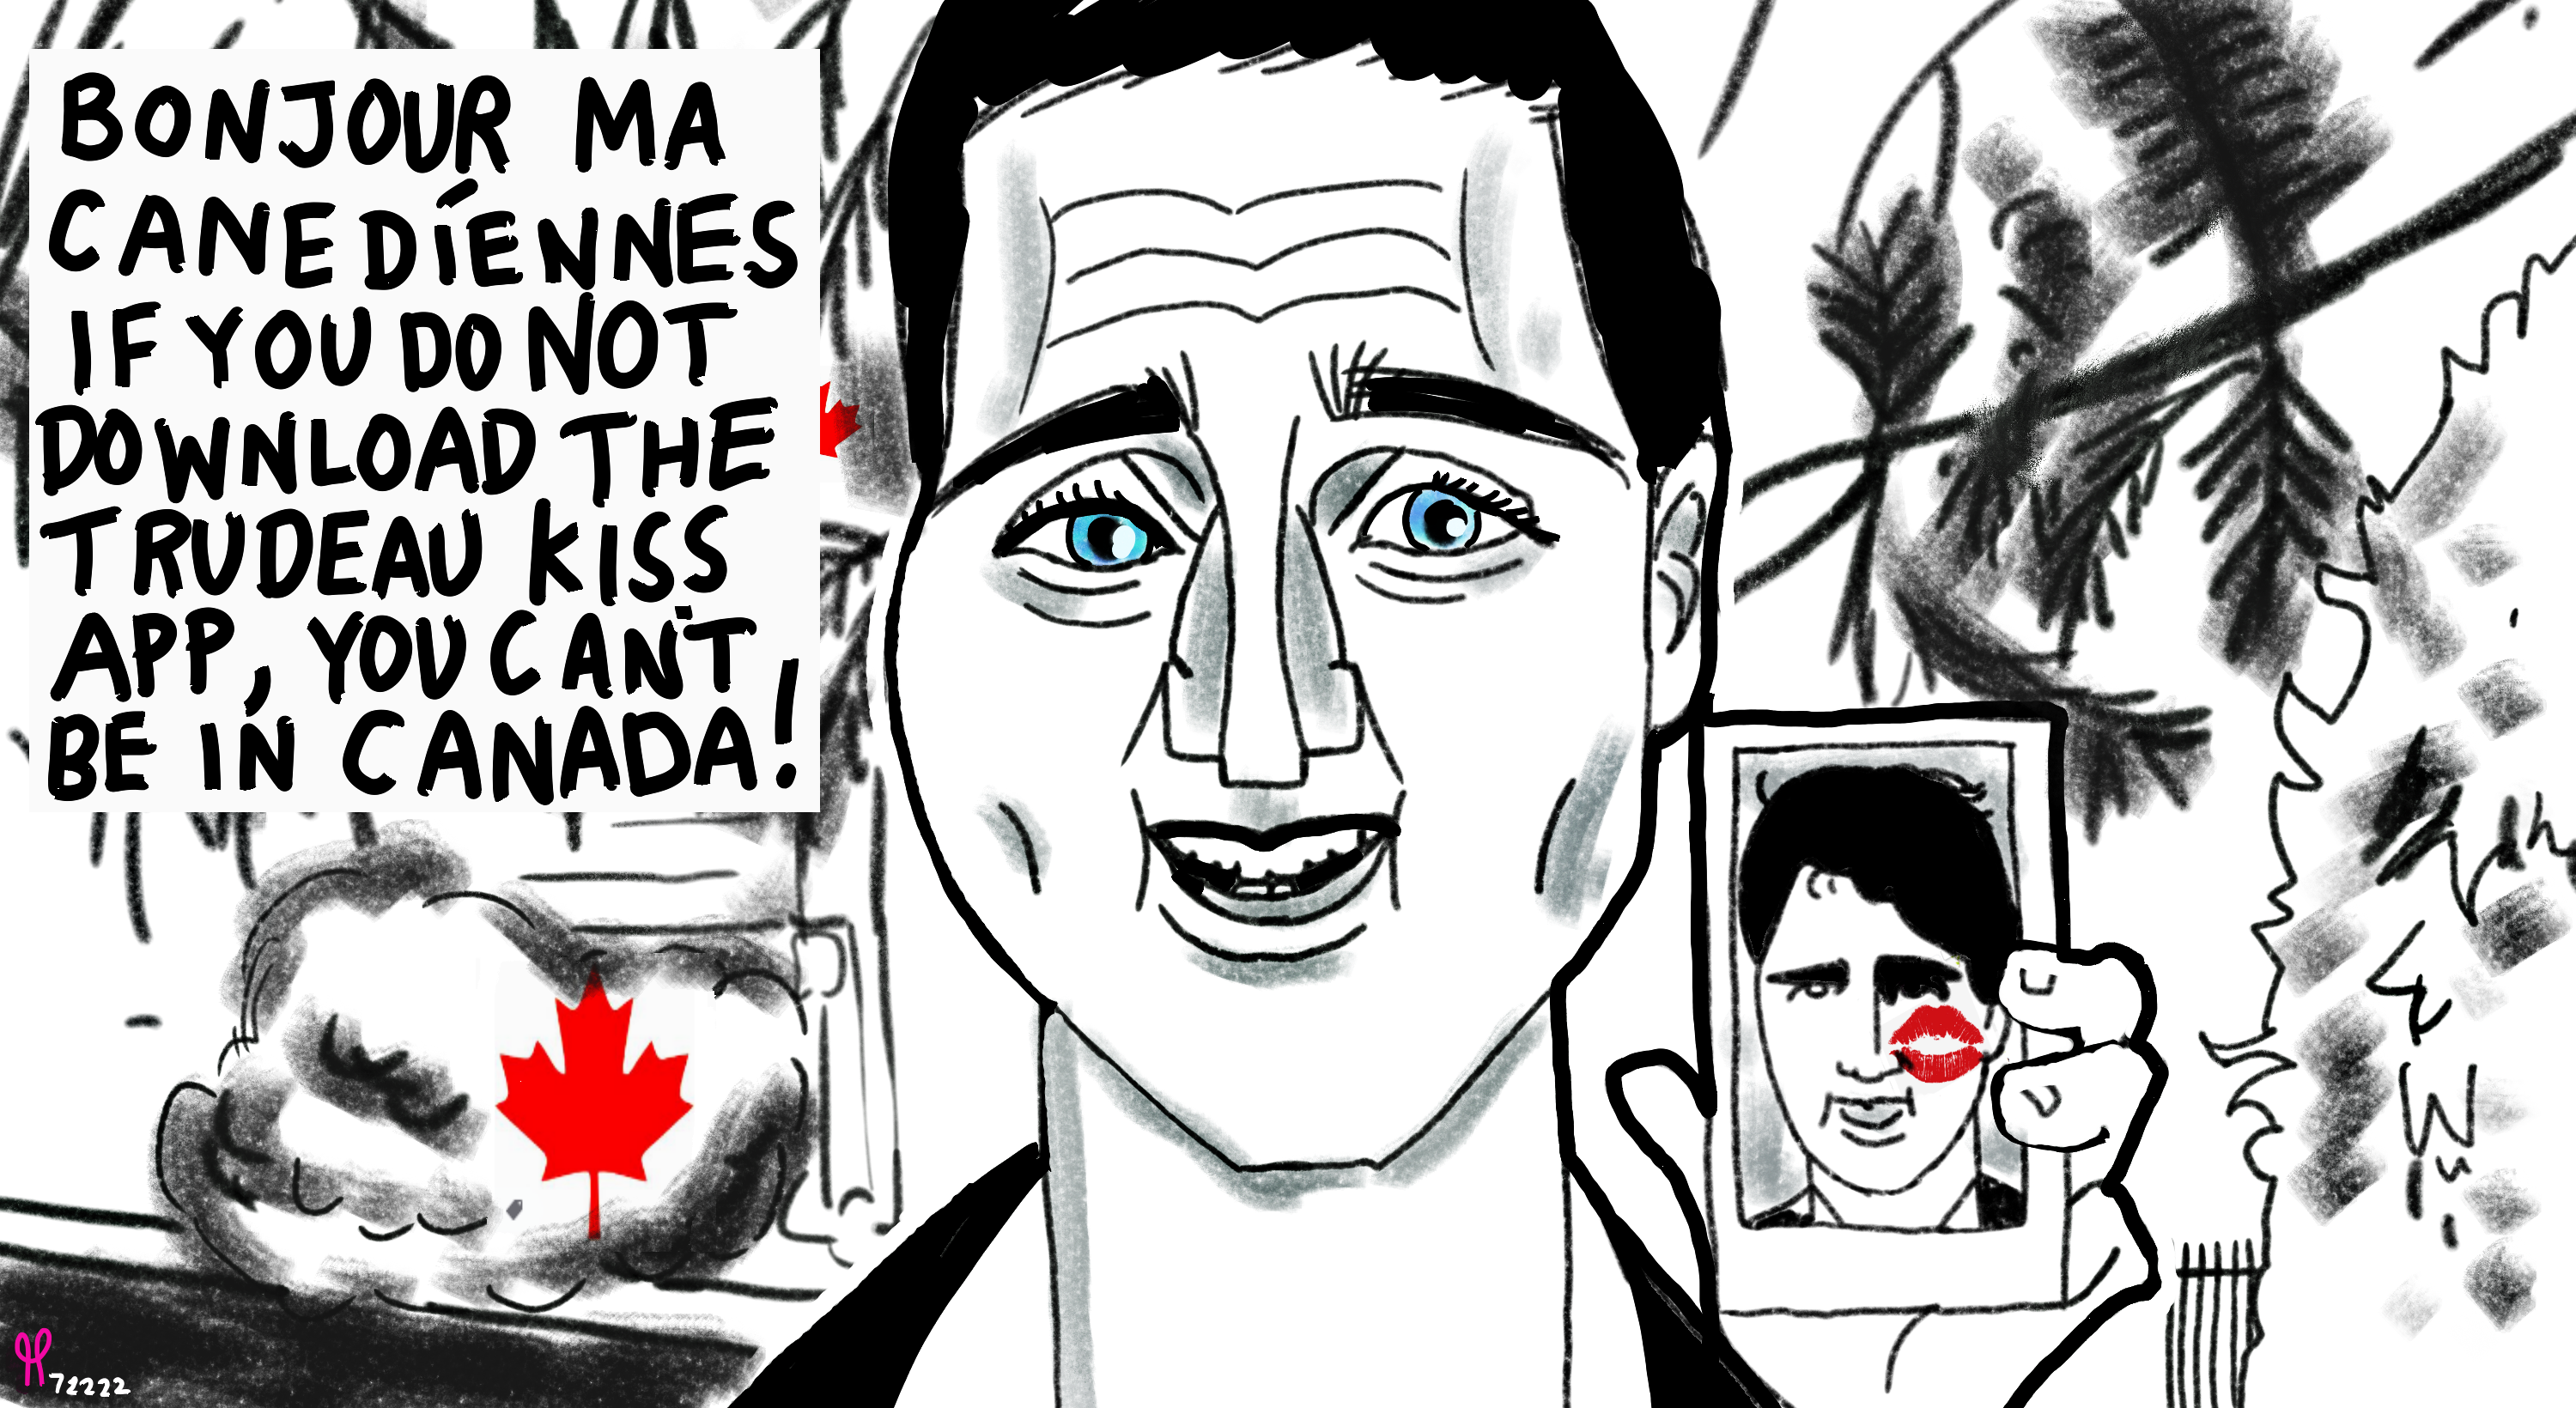 Justin Trudeau arrivecan app Canada immigration political editorial cartoon nft post thumbnail image